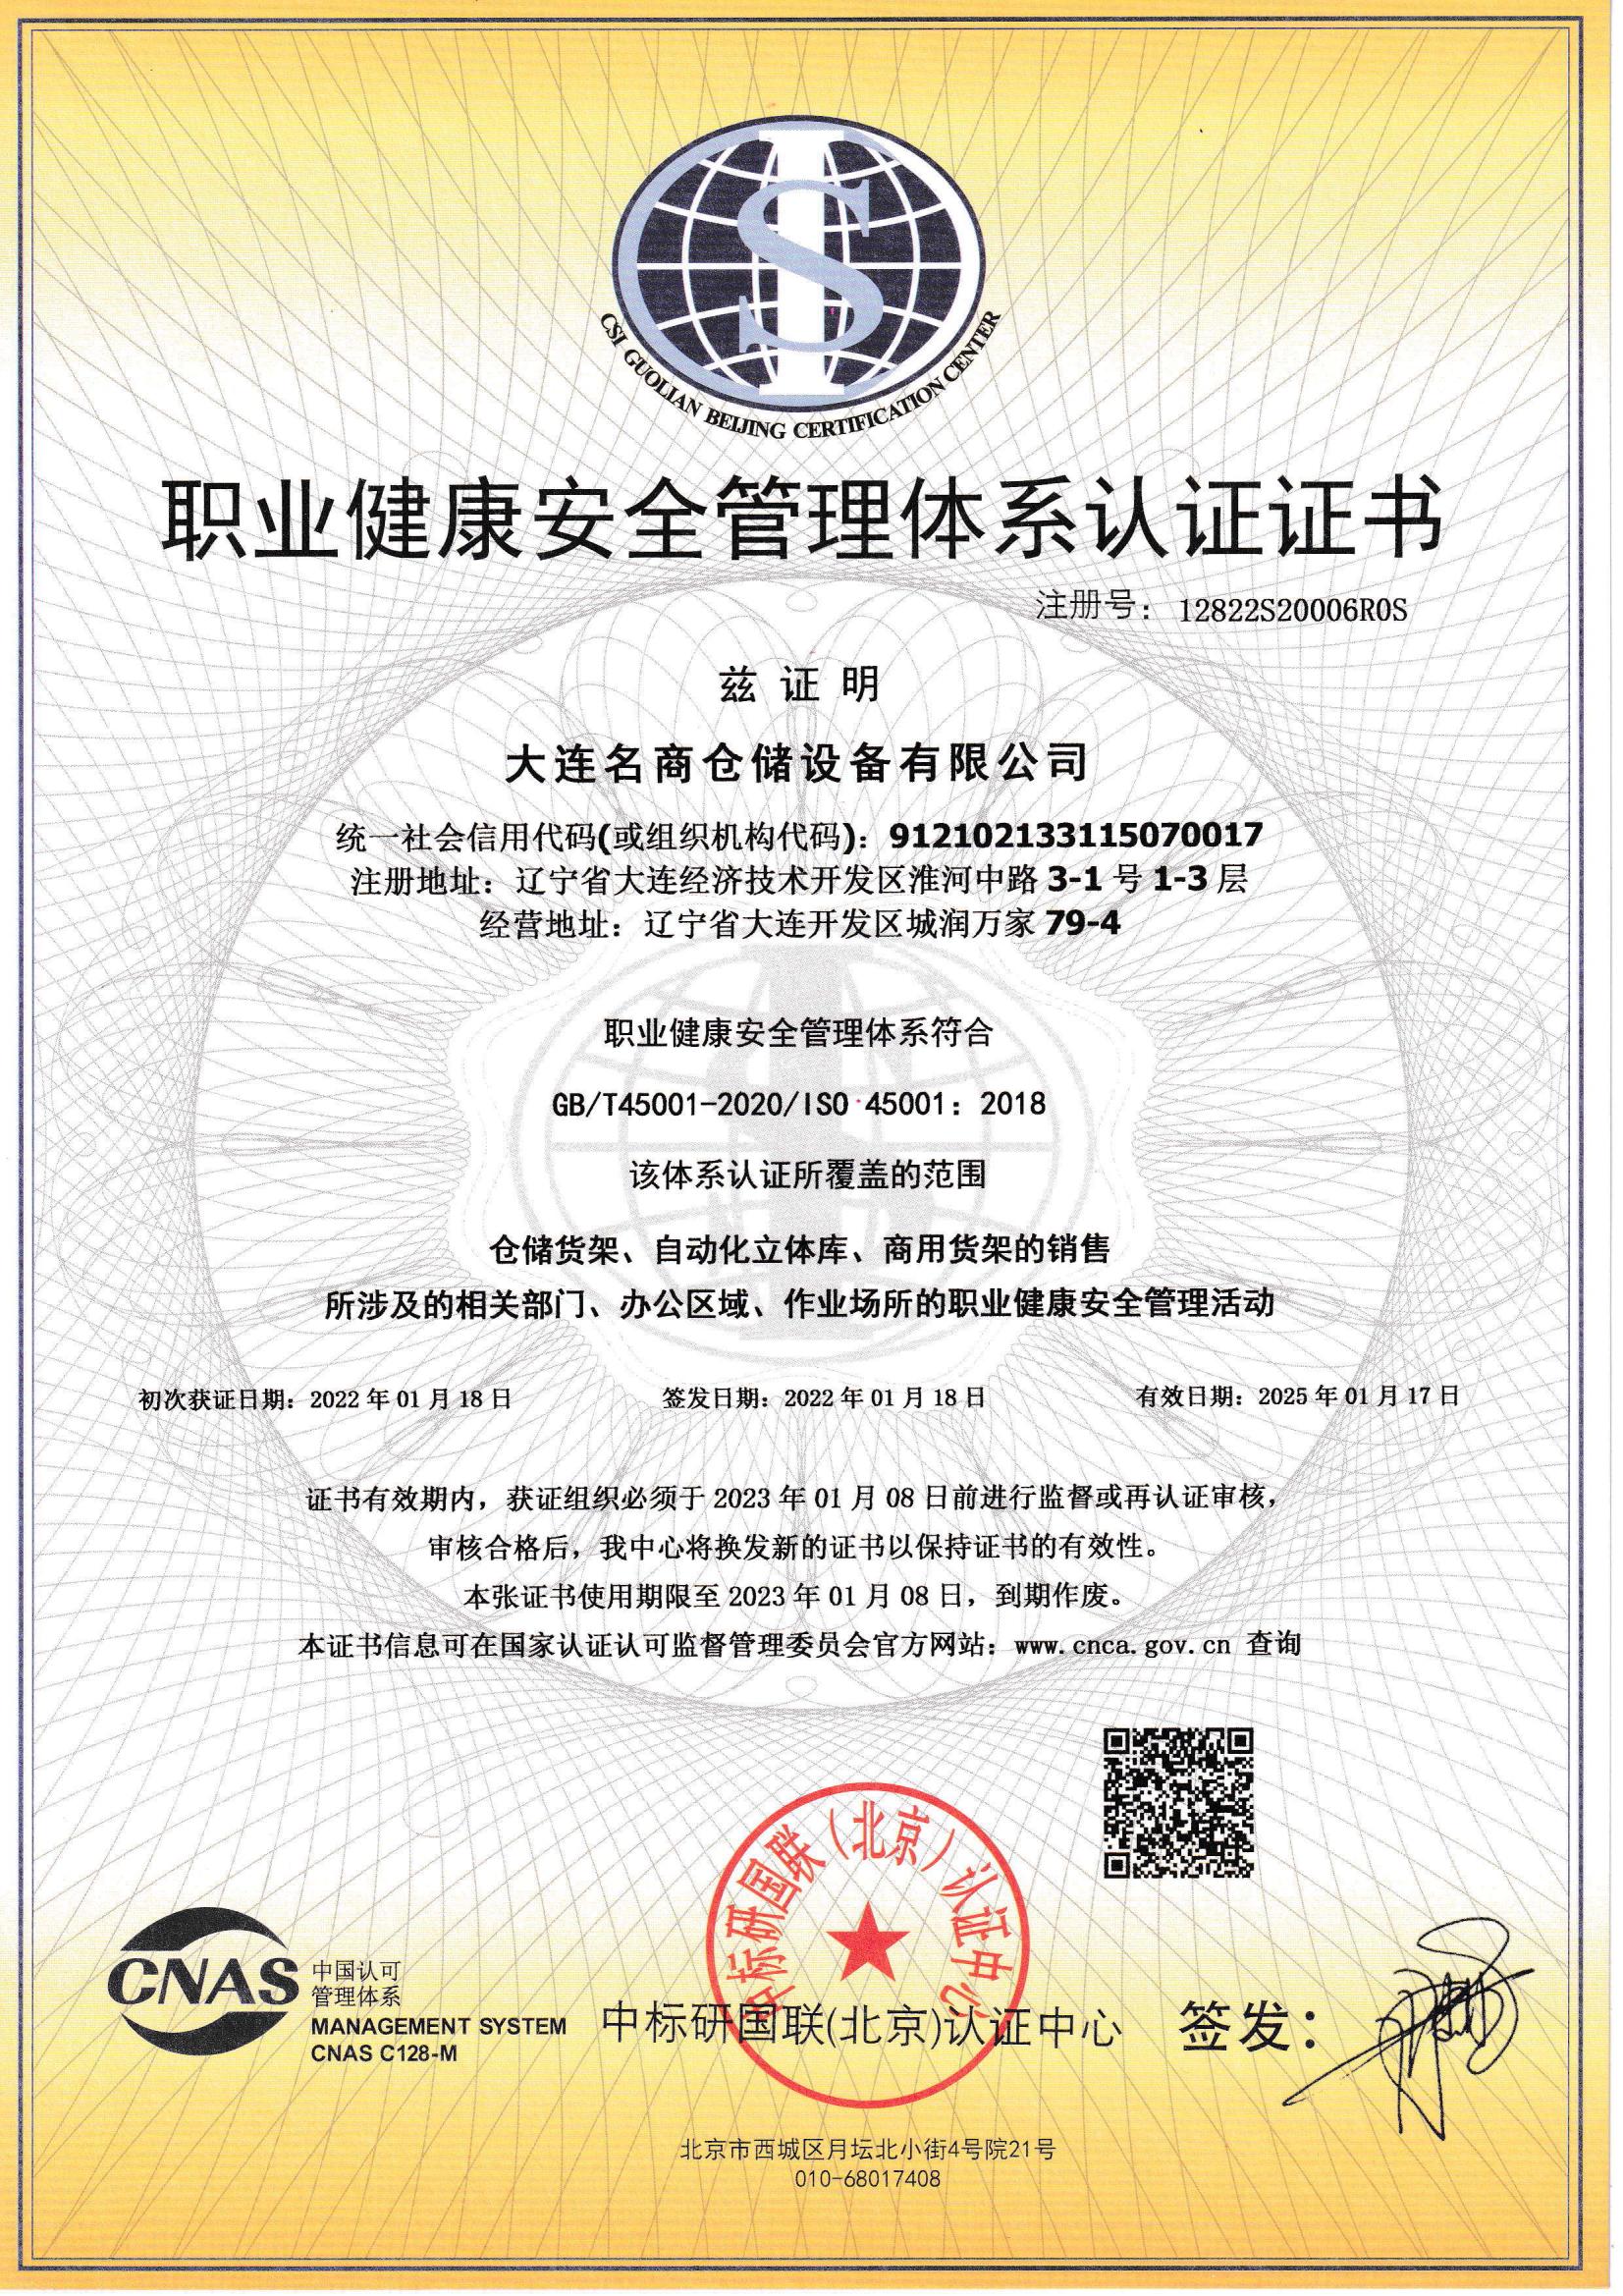 职业健康安全管理体系认证证书（中文）_00